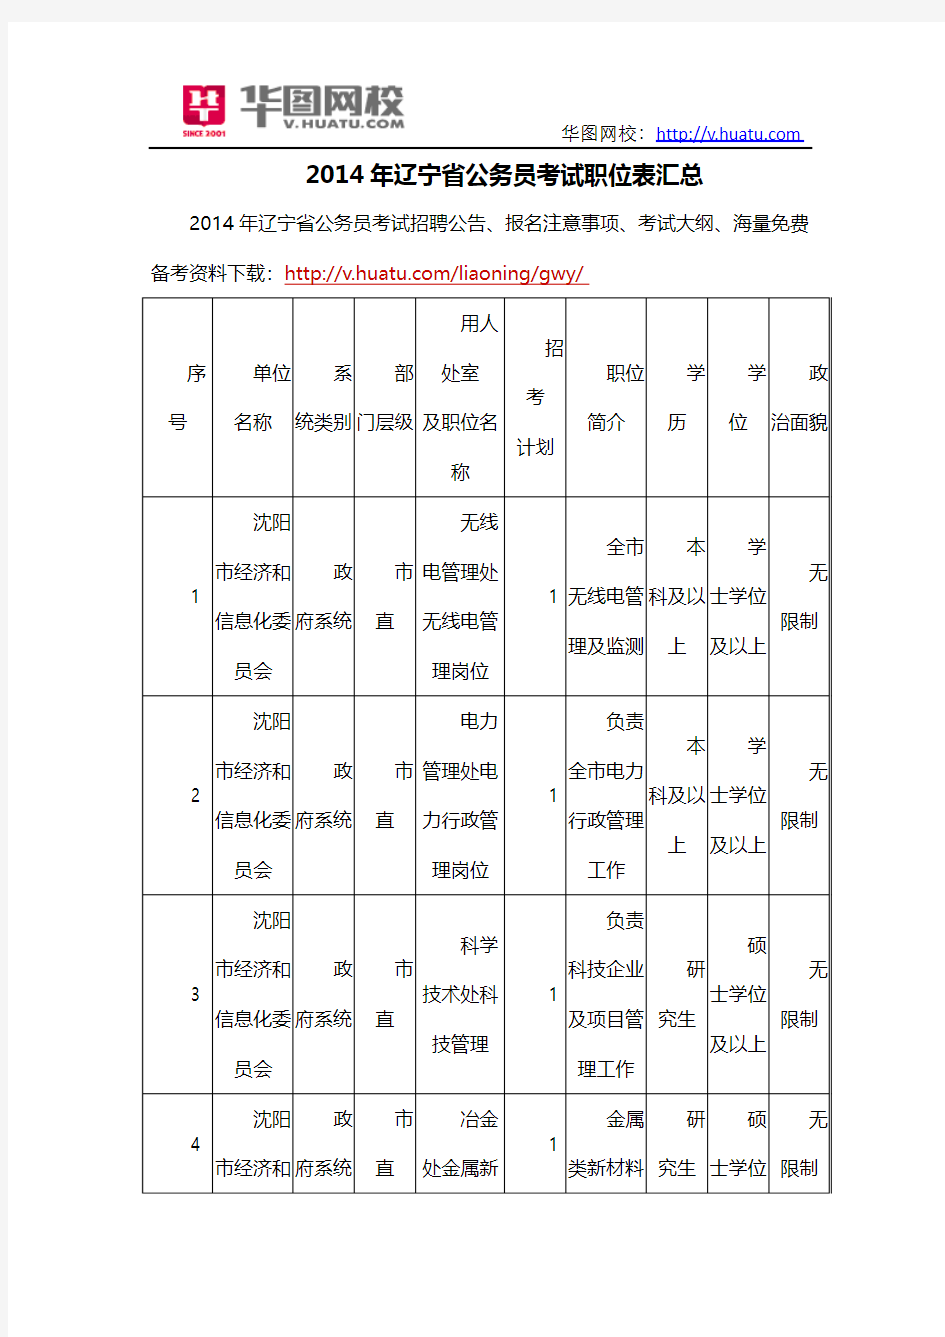 2014年辽宁省公务员考试职位表汇总